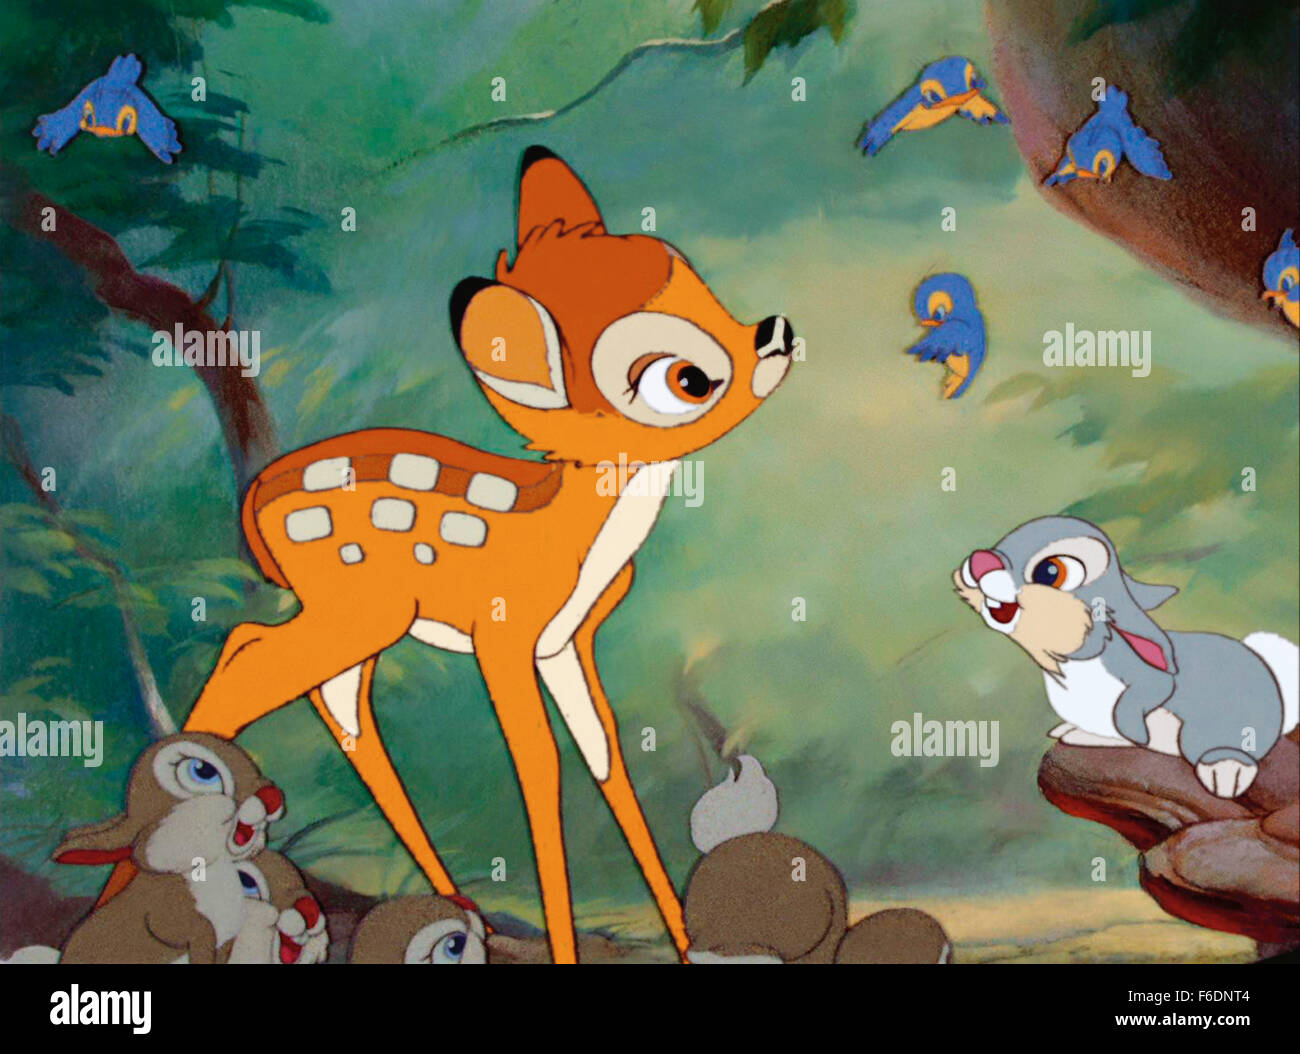 Datum der Freigabe: 21. August 1942. FILMTITEL: Bambi. STUDIO: Walt Disney-Produktionen. PLOT: Die animierte Geschichte von Bambi, ein junges Reh als "Prinz des Waldes" bei seiner Geburt gefeiert. Mit zunehmender Bambi er freundet sich mit den anderen Tieren des Waldes, lernt die Fähigkeiten zum Überleben brauchten, und sogar Funde lieben. Eines Tages jedoch die Jäger kommen, und Bambi muss lernen, so mutig wie sein Vater sein, wenn er die anderen Hirsche in Sicherheit zu bringen. IM BILD:. Stockfoto